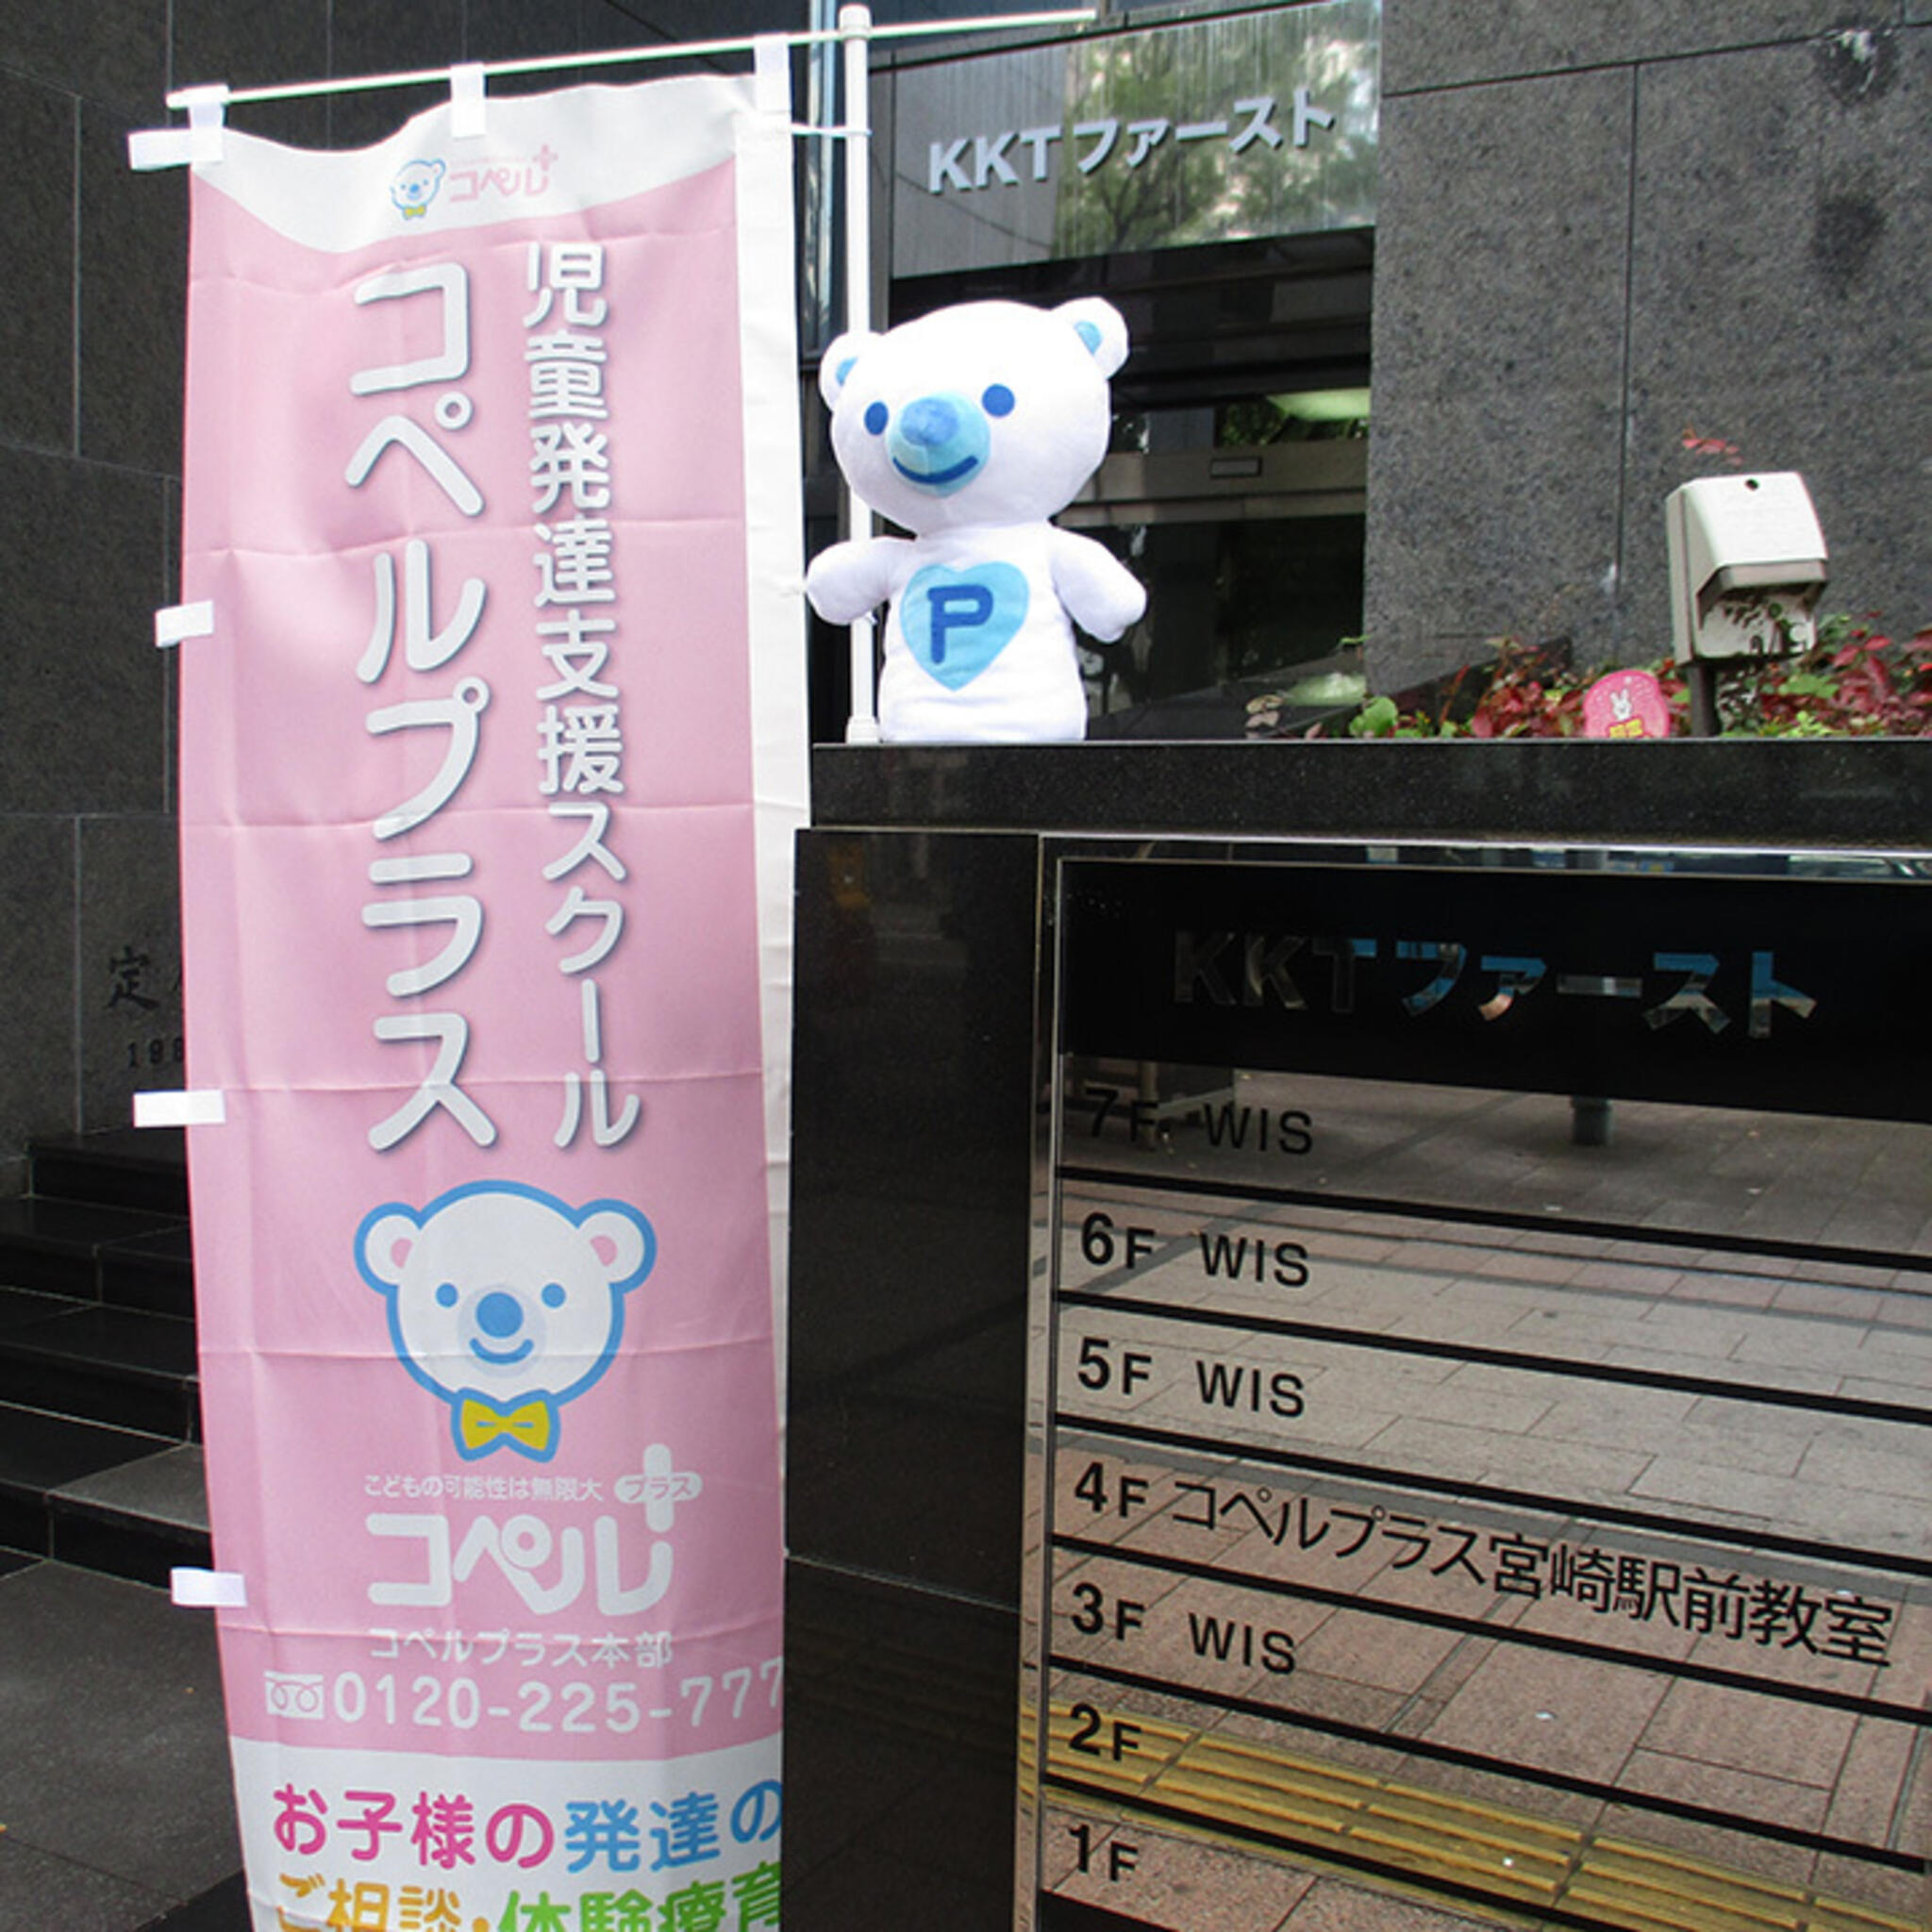 多機能型事業所 コペルプラス 宮崎駅前教室の代表写真1